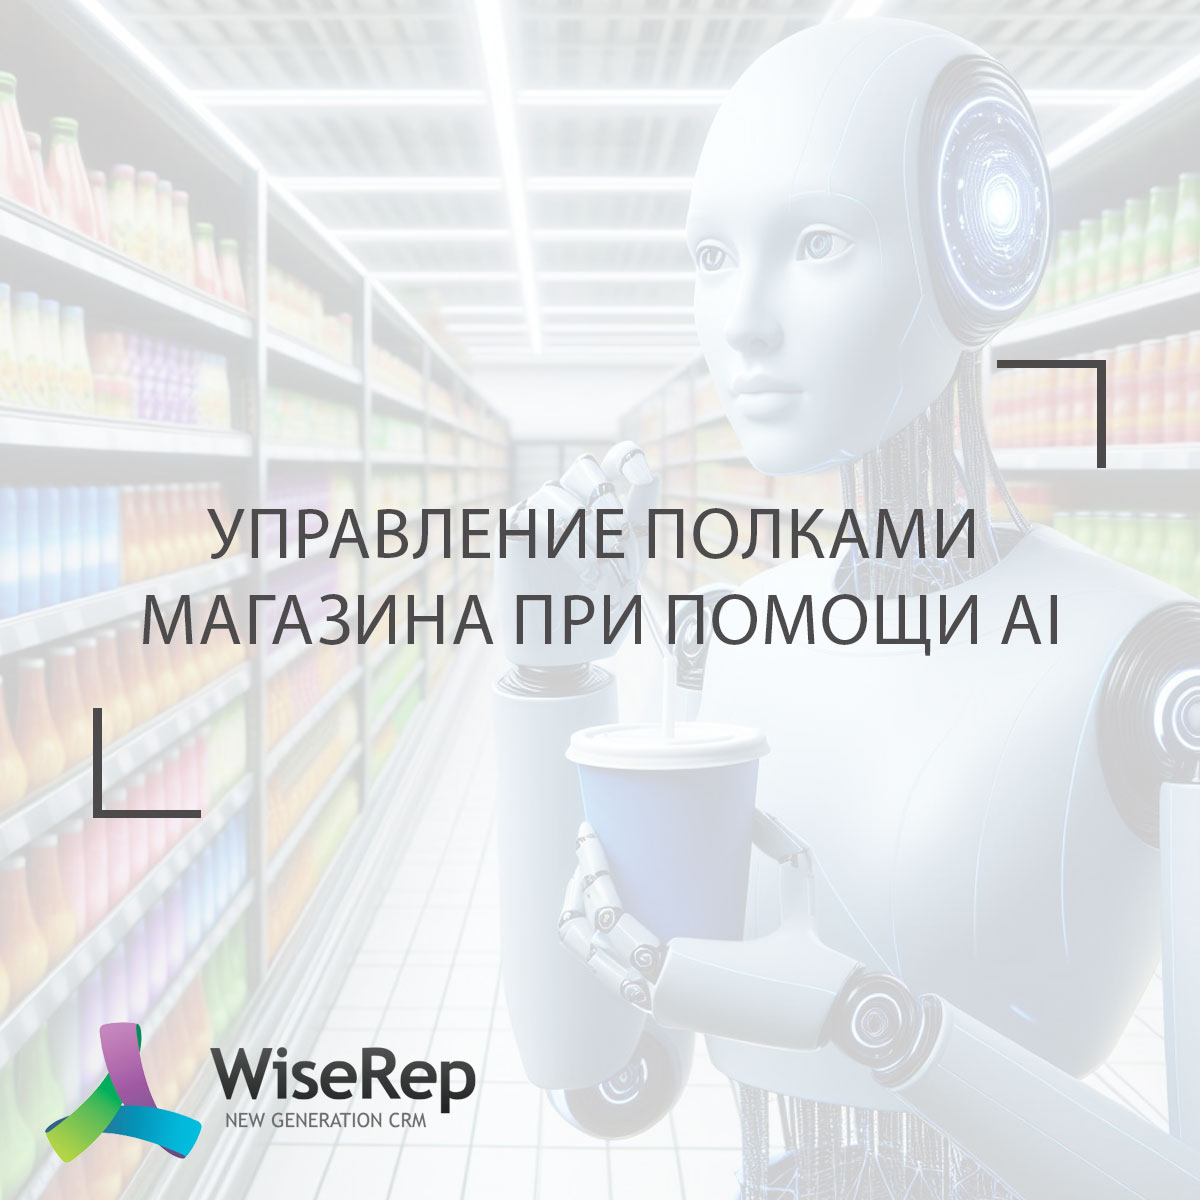 Управление полками магазина с помощью искусственного интеллекта (AI)